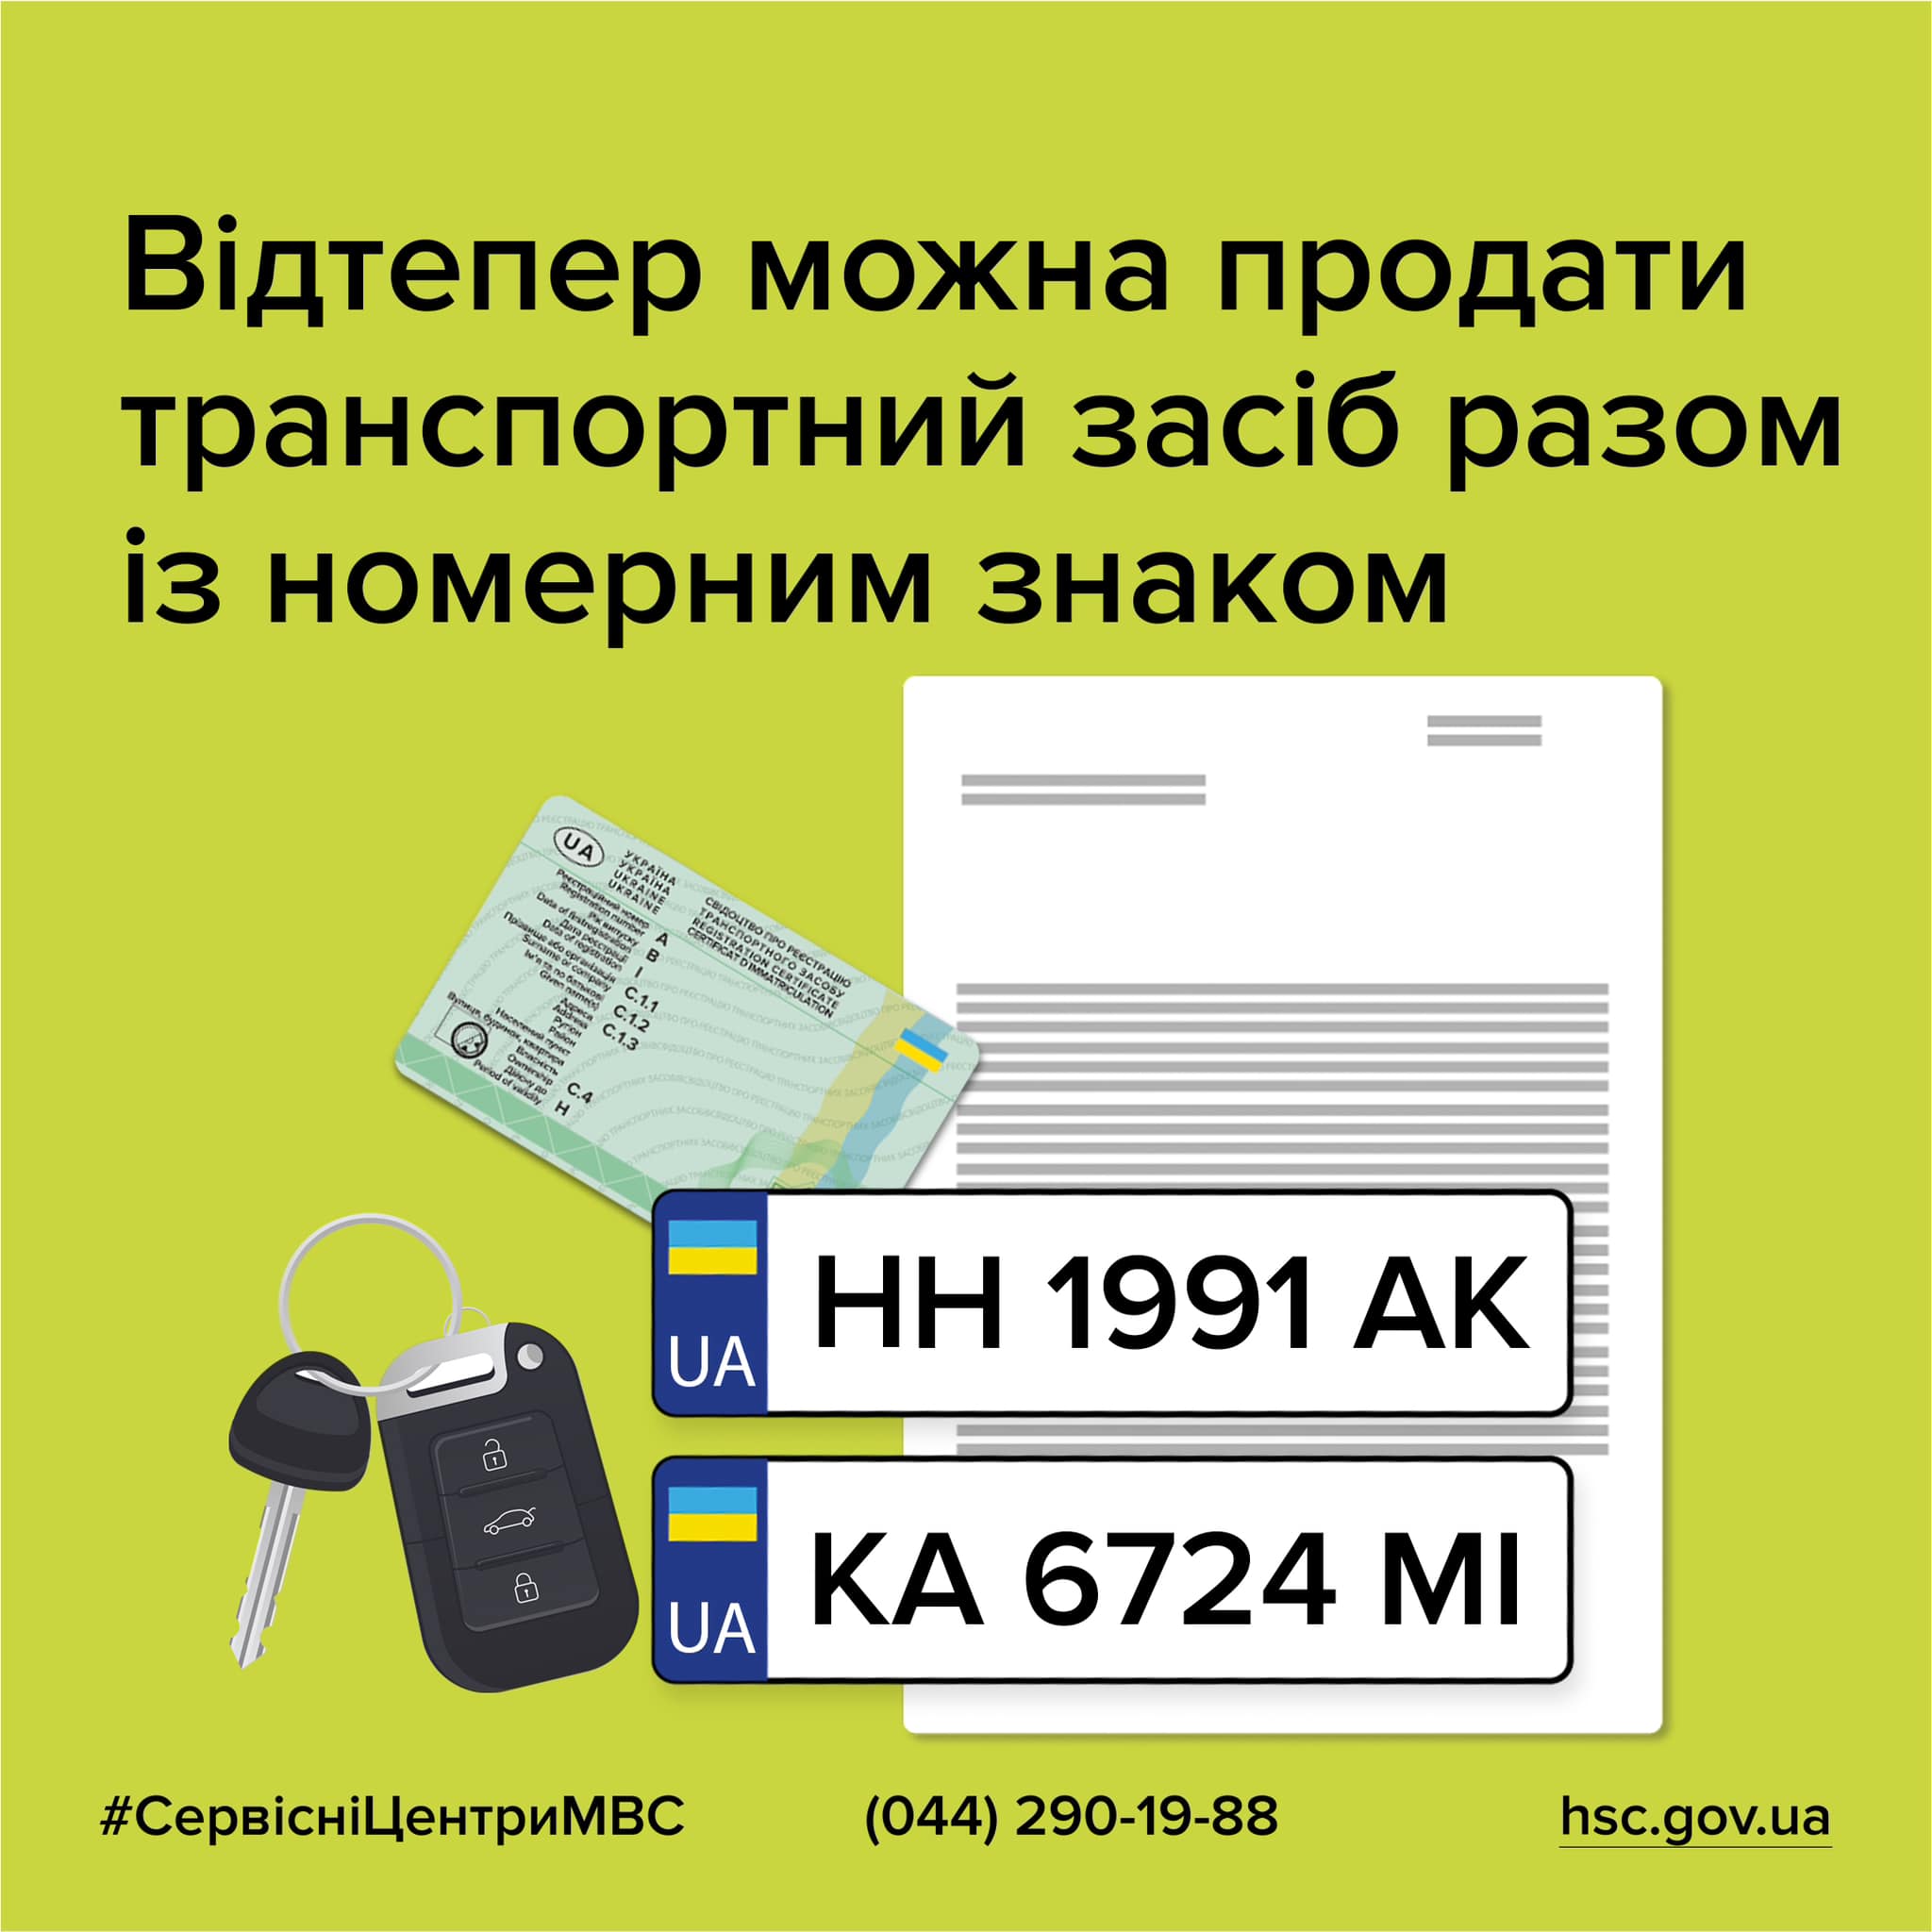 Українці тепер можуть продавати автомобілі разом із номерними знаками, - Кабмін